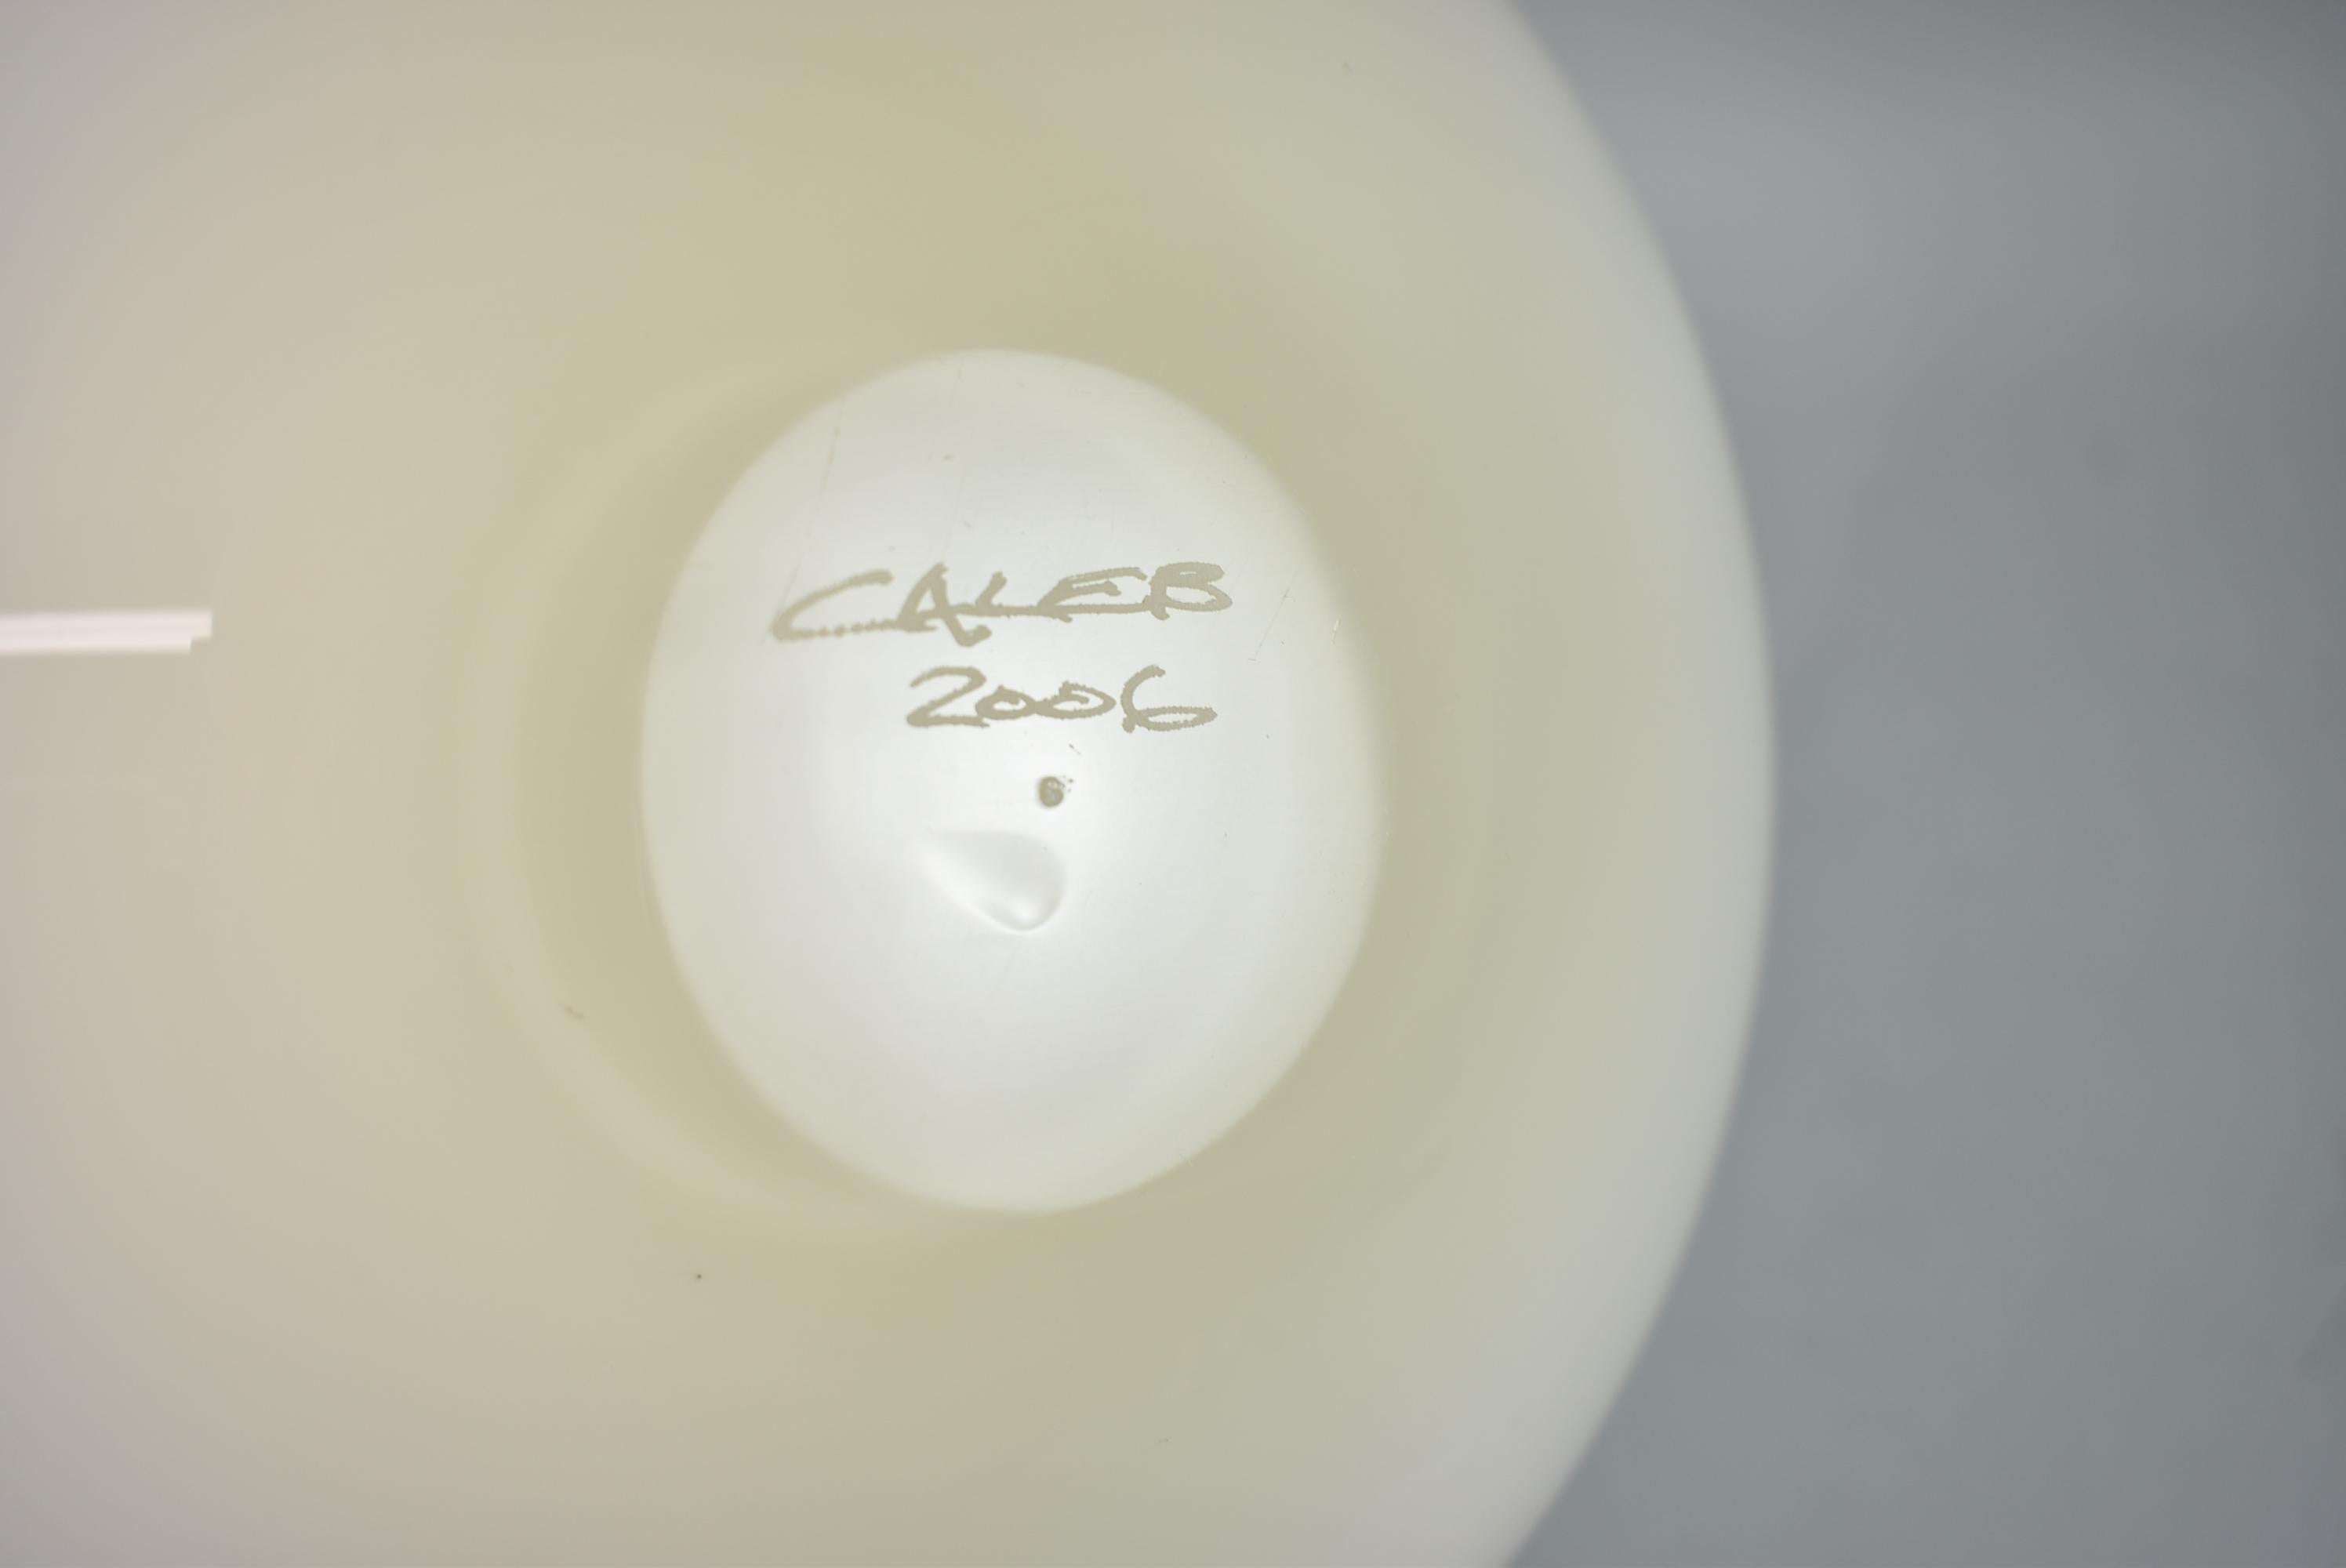 Handgeblasene Schale aus Kunstglas für Obst oder dekoratives Kunstglas. Signiert und nummeriert von Caleb Siemon. Sehr guter Zustand. Abmessungen: 12